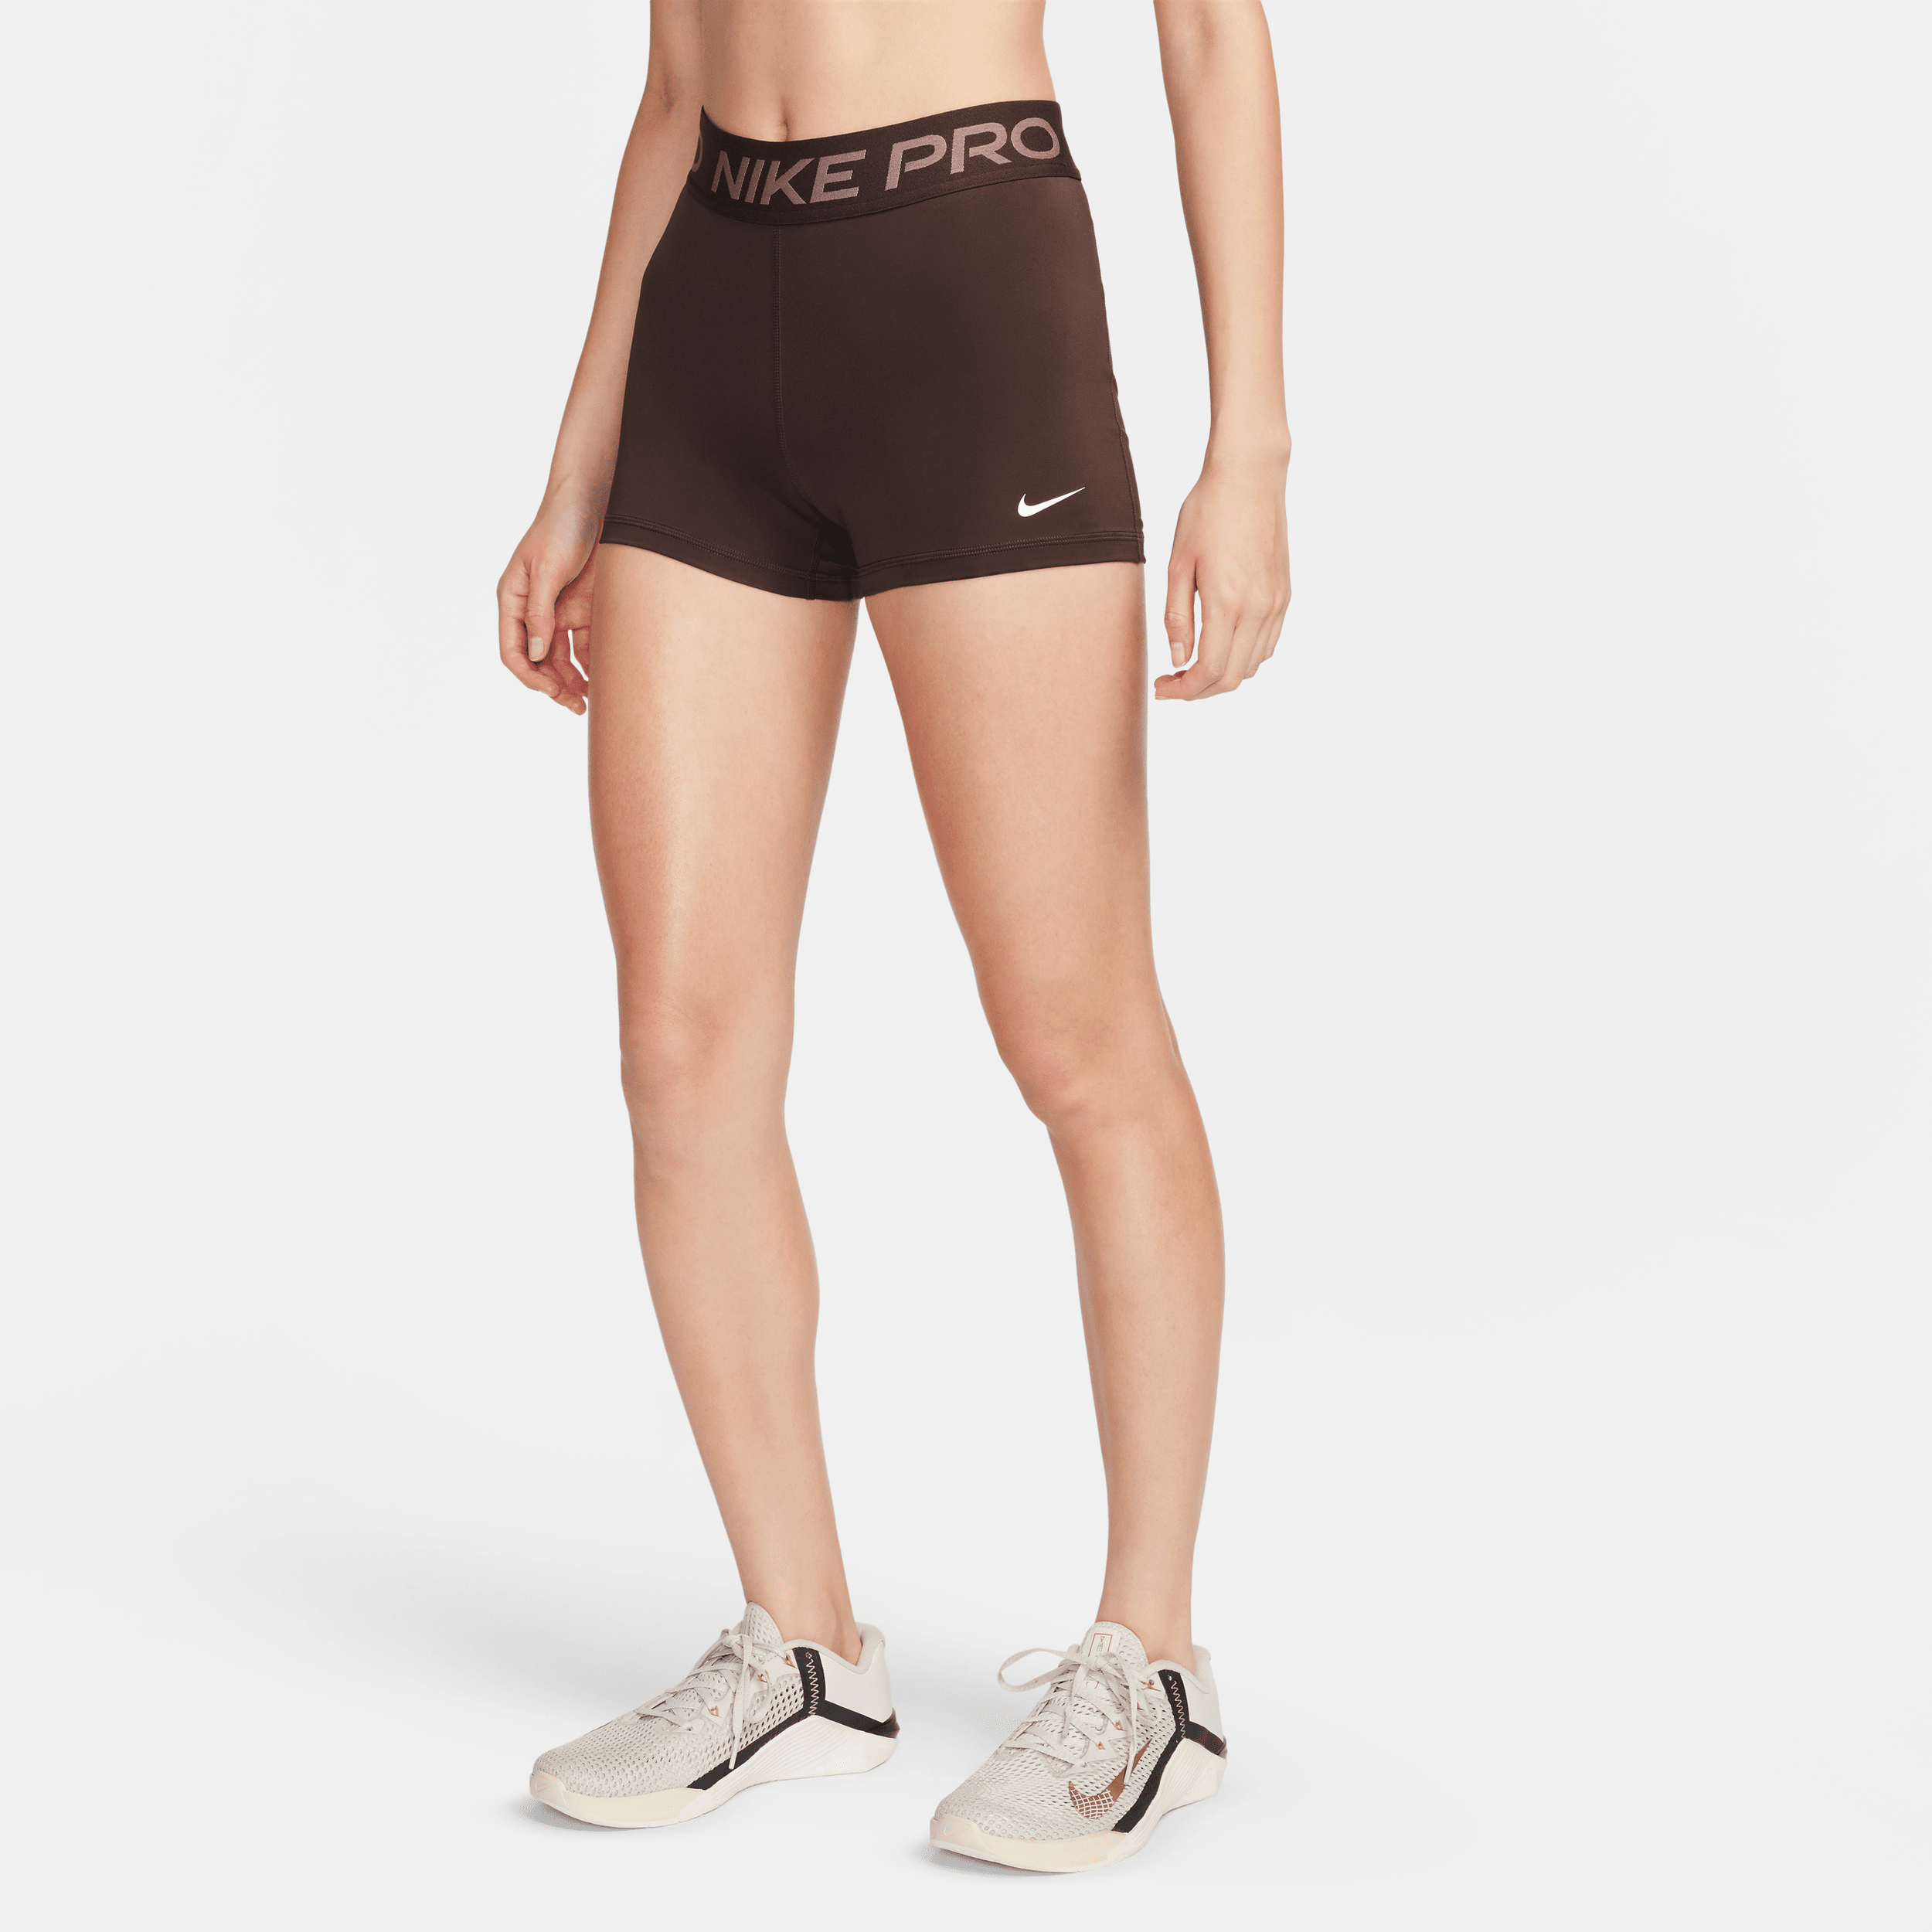 Nike Pro Pantalón corto de 8 cm - Mujer - Marrón